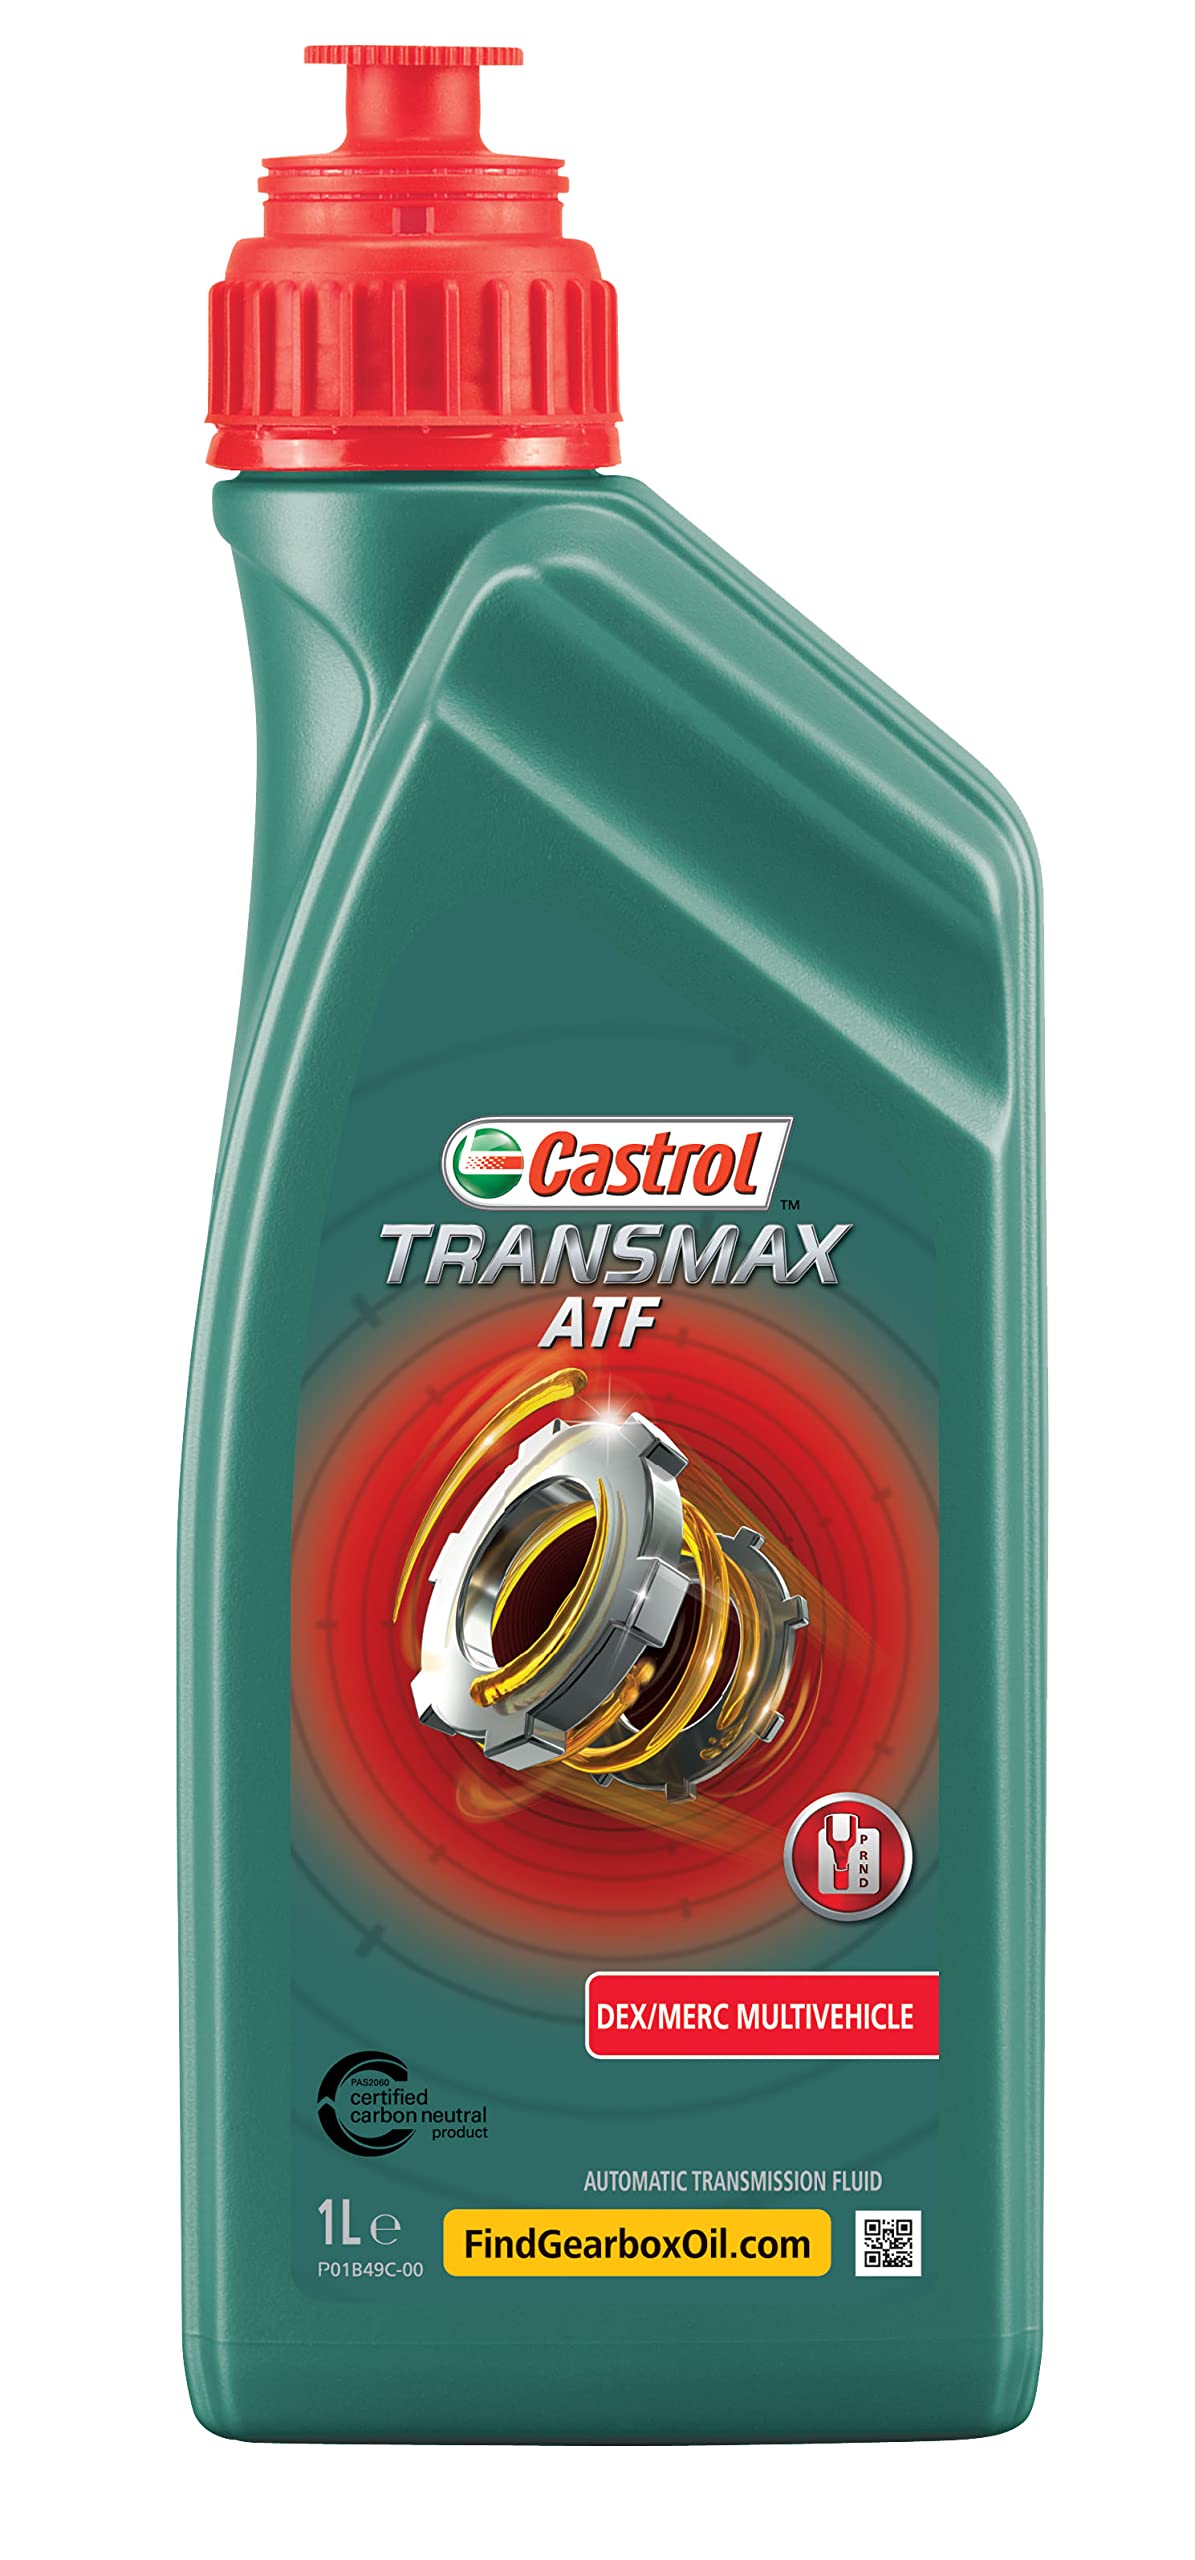 Castrol TRANSMAX ATF Dex/Merc Multivehicle, 1 Liter von Castrol